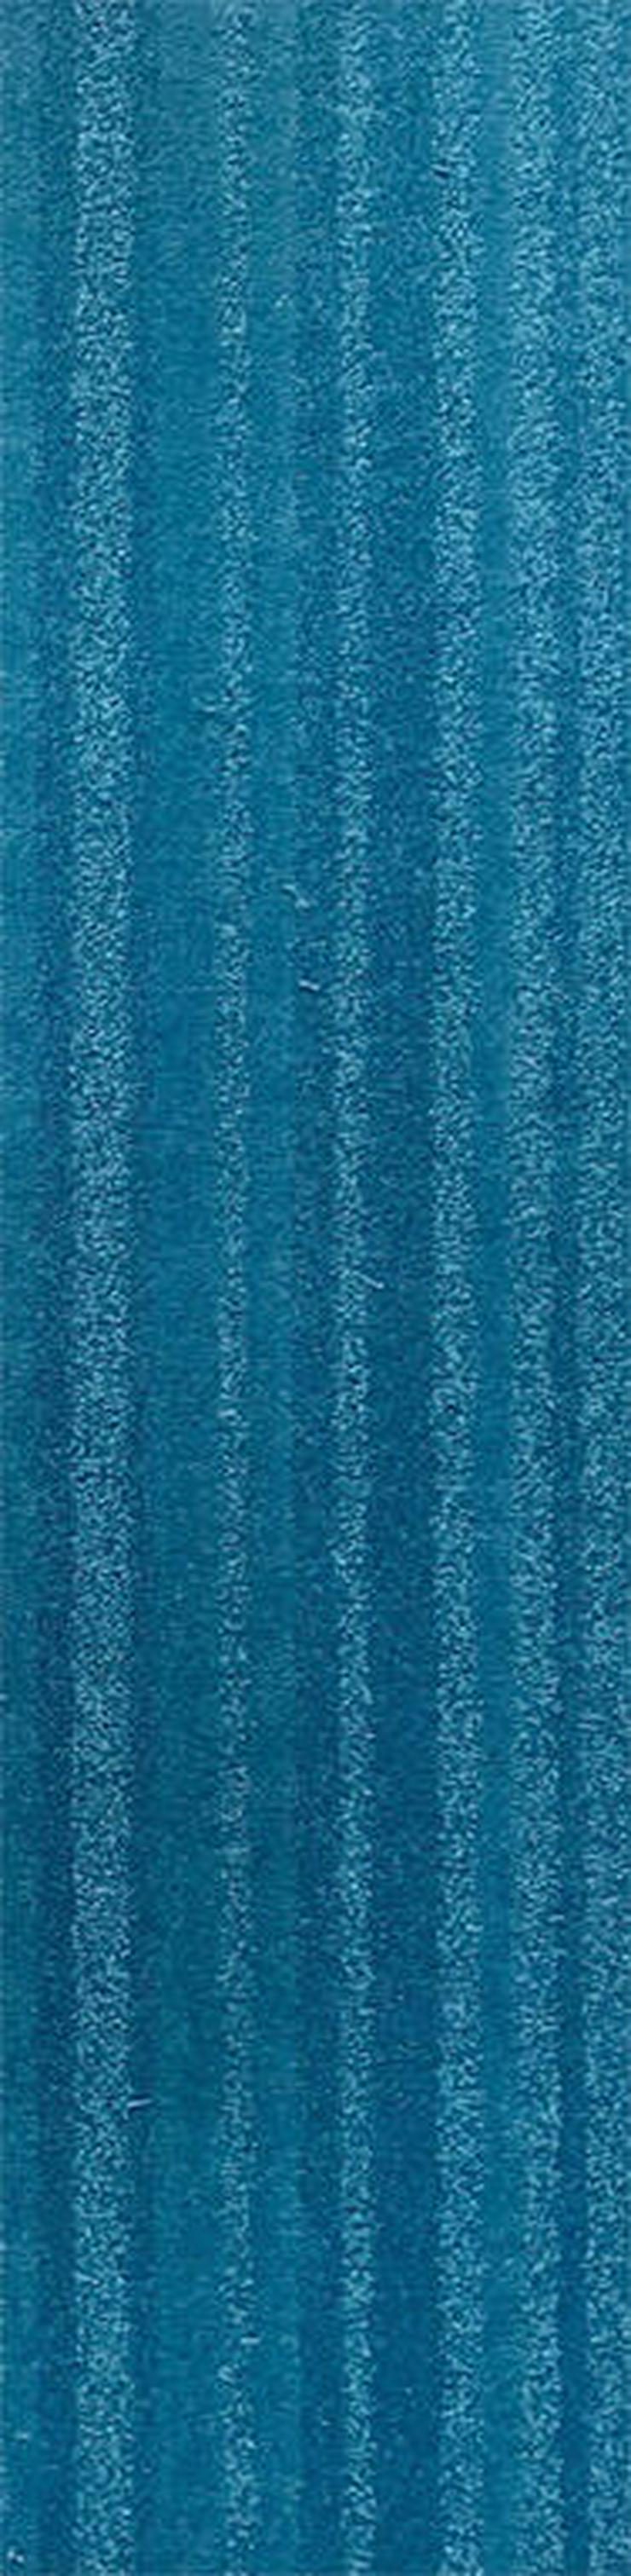 Günstige Menge blauer Teppichfliesen 25x100cm Neu - Teppiche - Bild 1